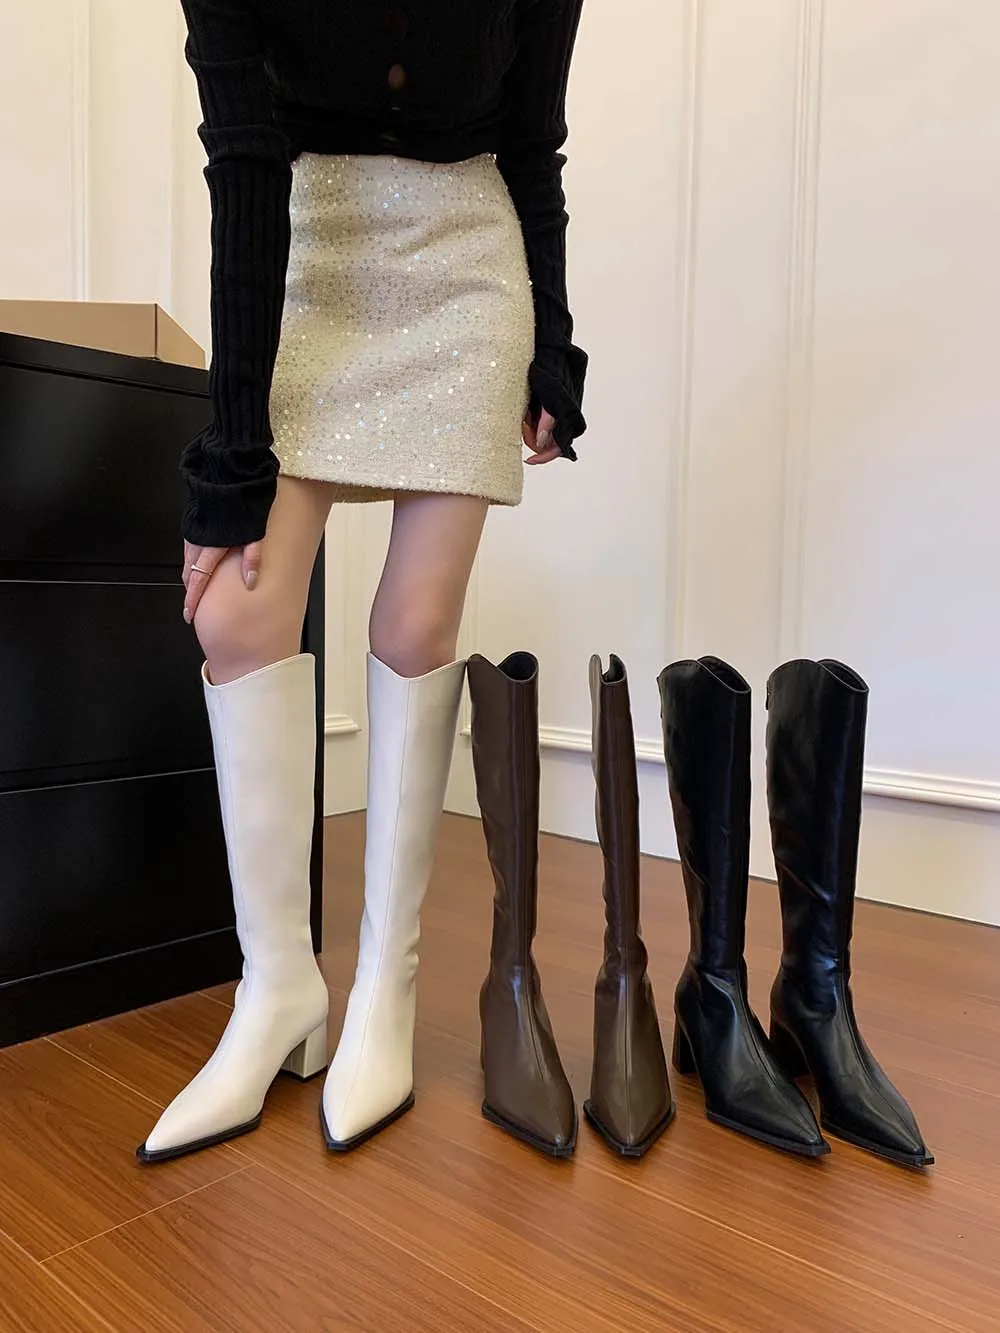 

Женские сапоги Челси с острым носком, высокие сапоги до колена, модные рыцарские сапоги на толстом высоком каблуке, черные, белые, коричневые сапоги на молнии сзади